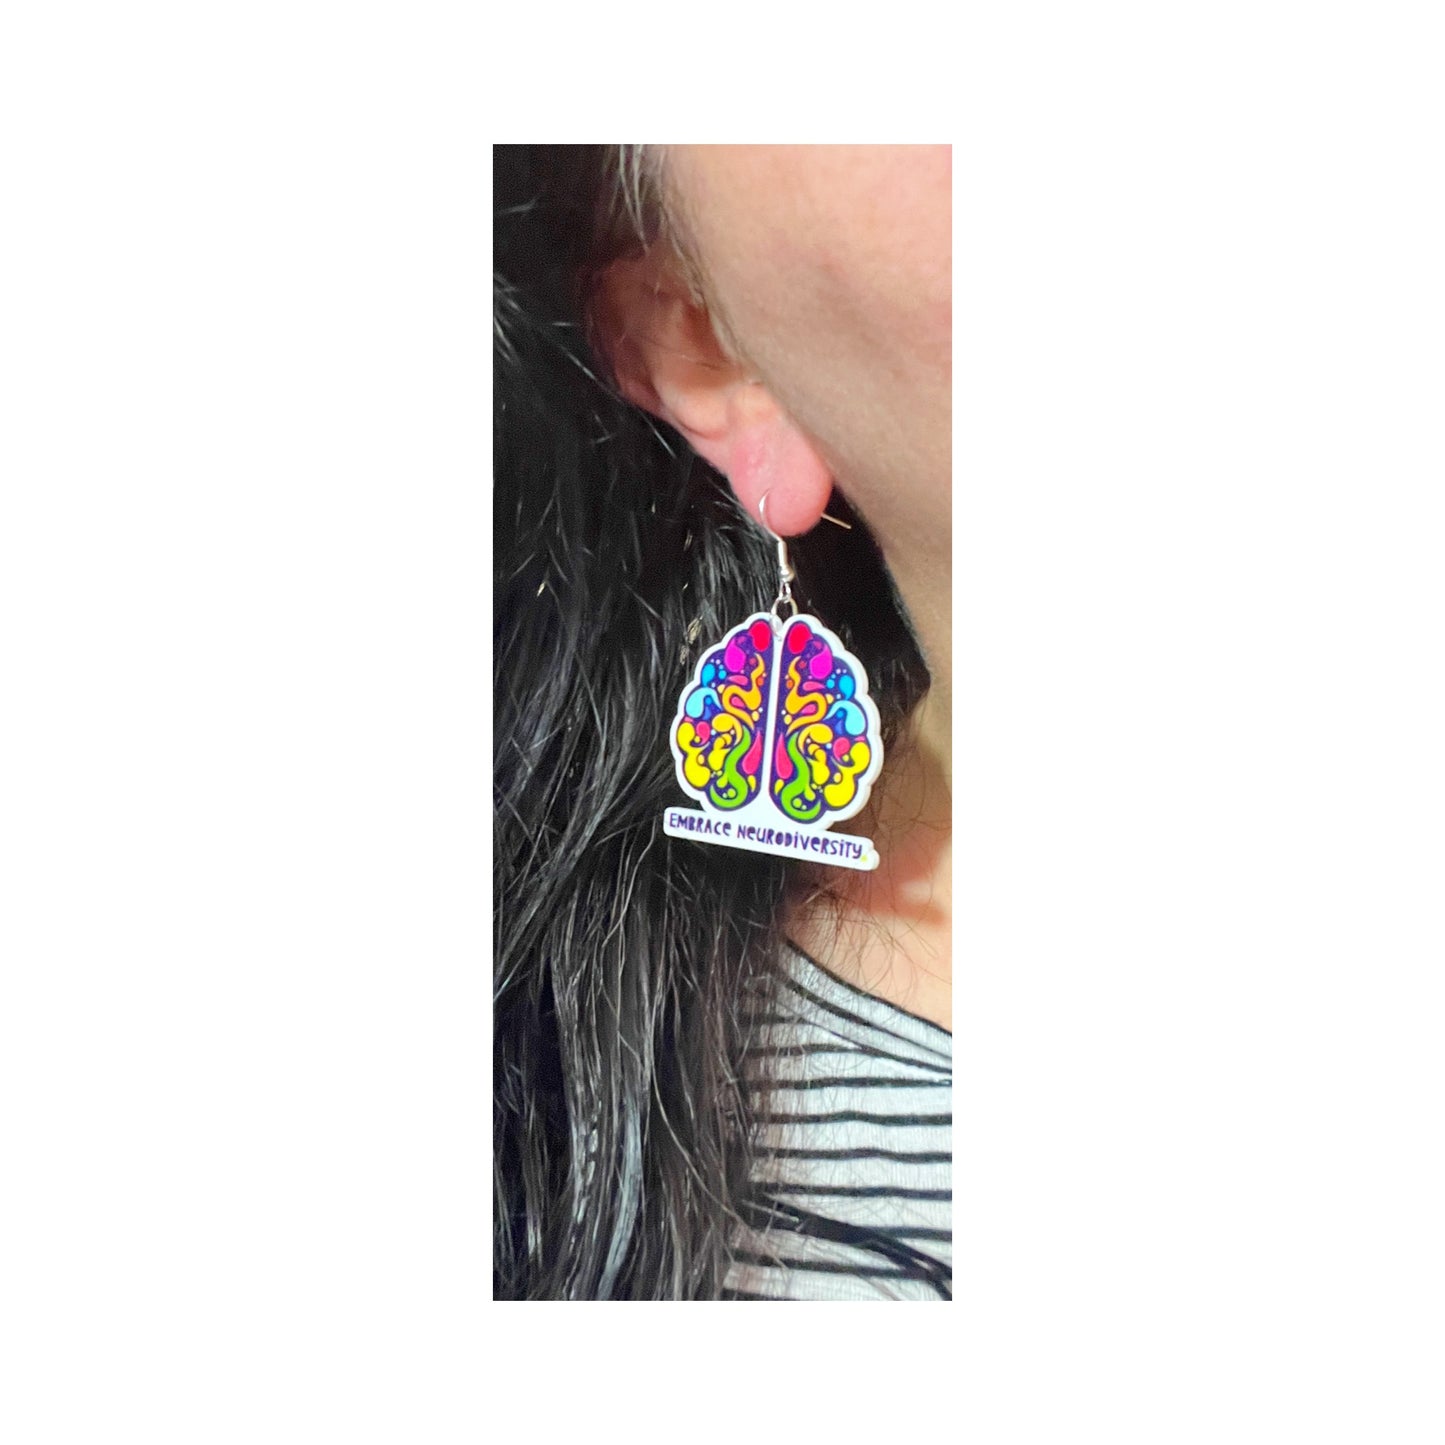 Embrace Neurodiversity Acrylic Drop Earrings